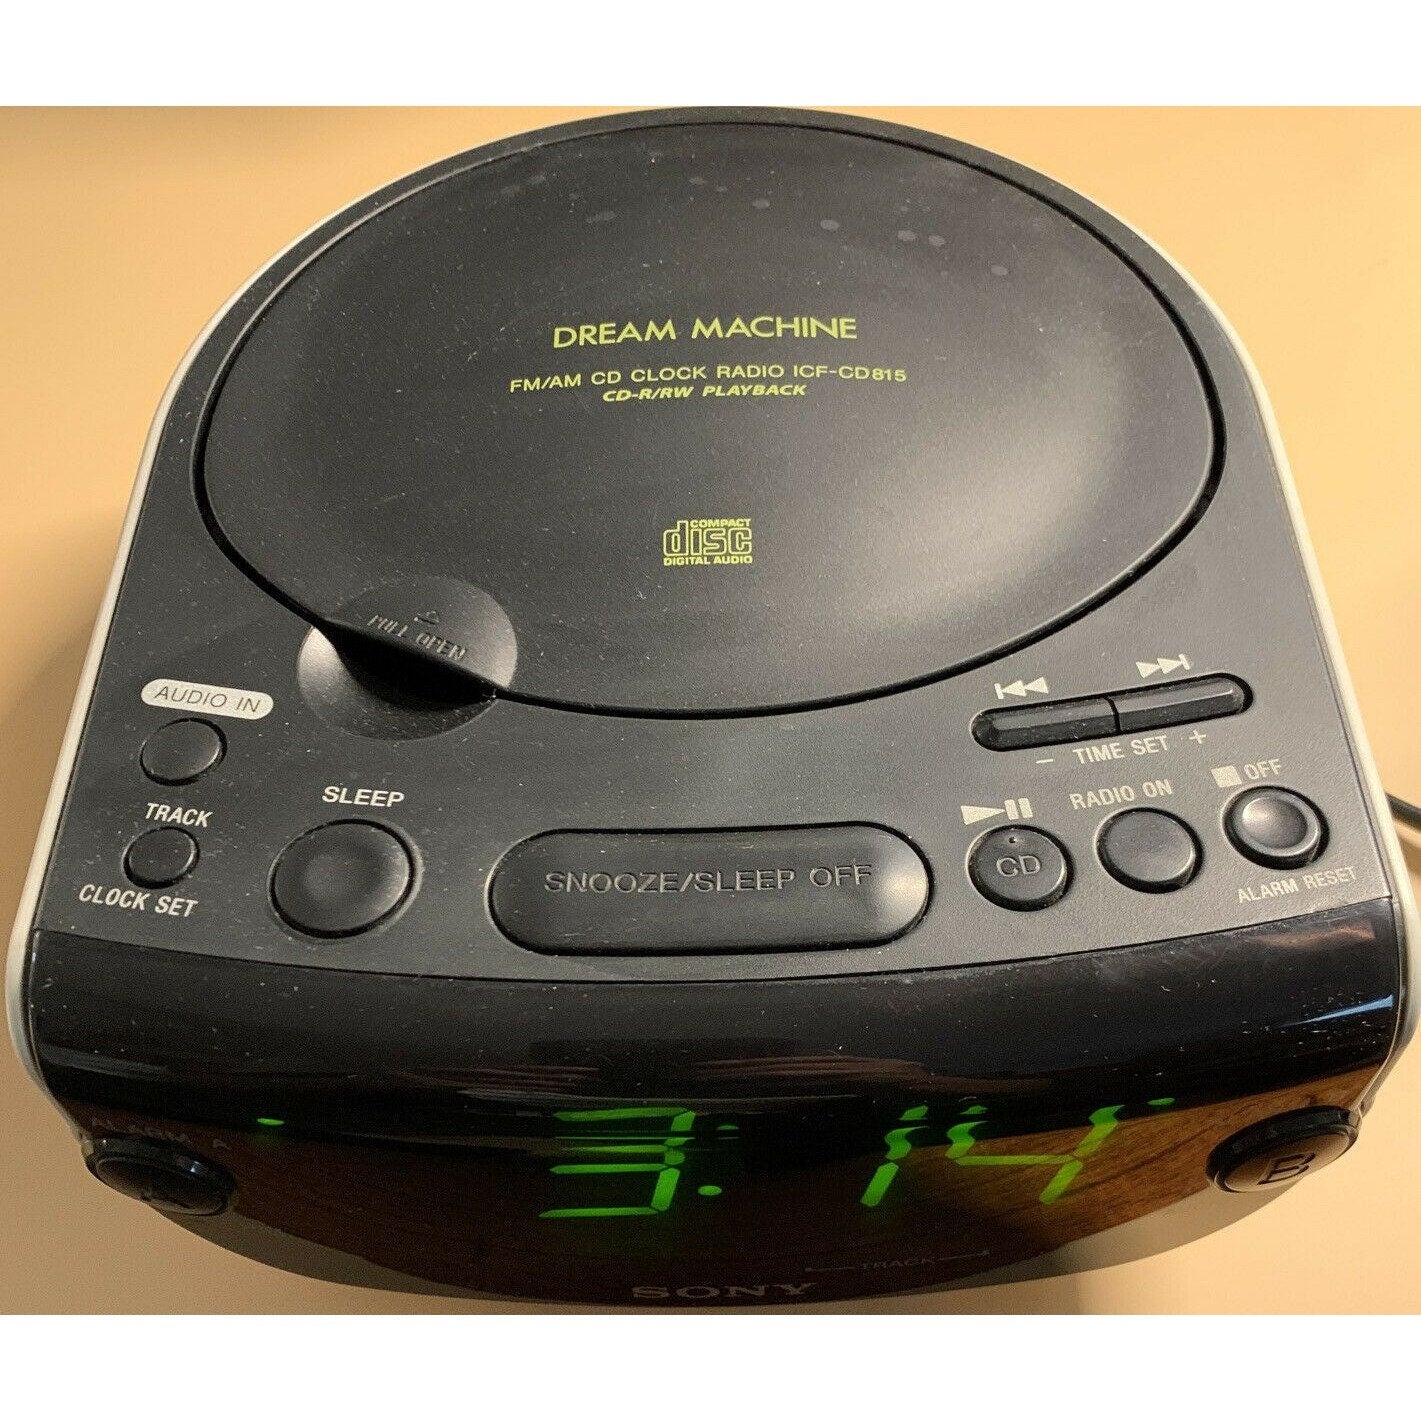 Sony DreamMachine AM/FM Alarm Clock Radio ICF-CD815